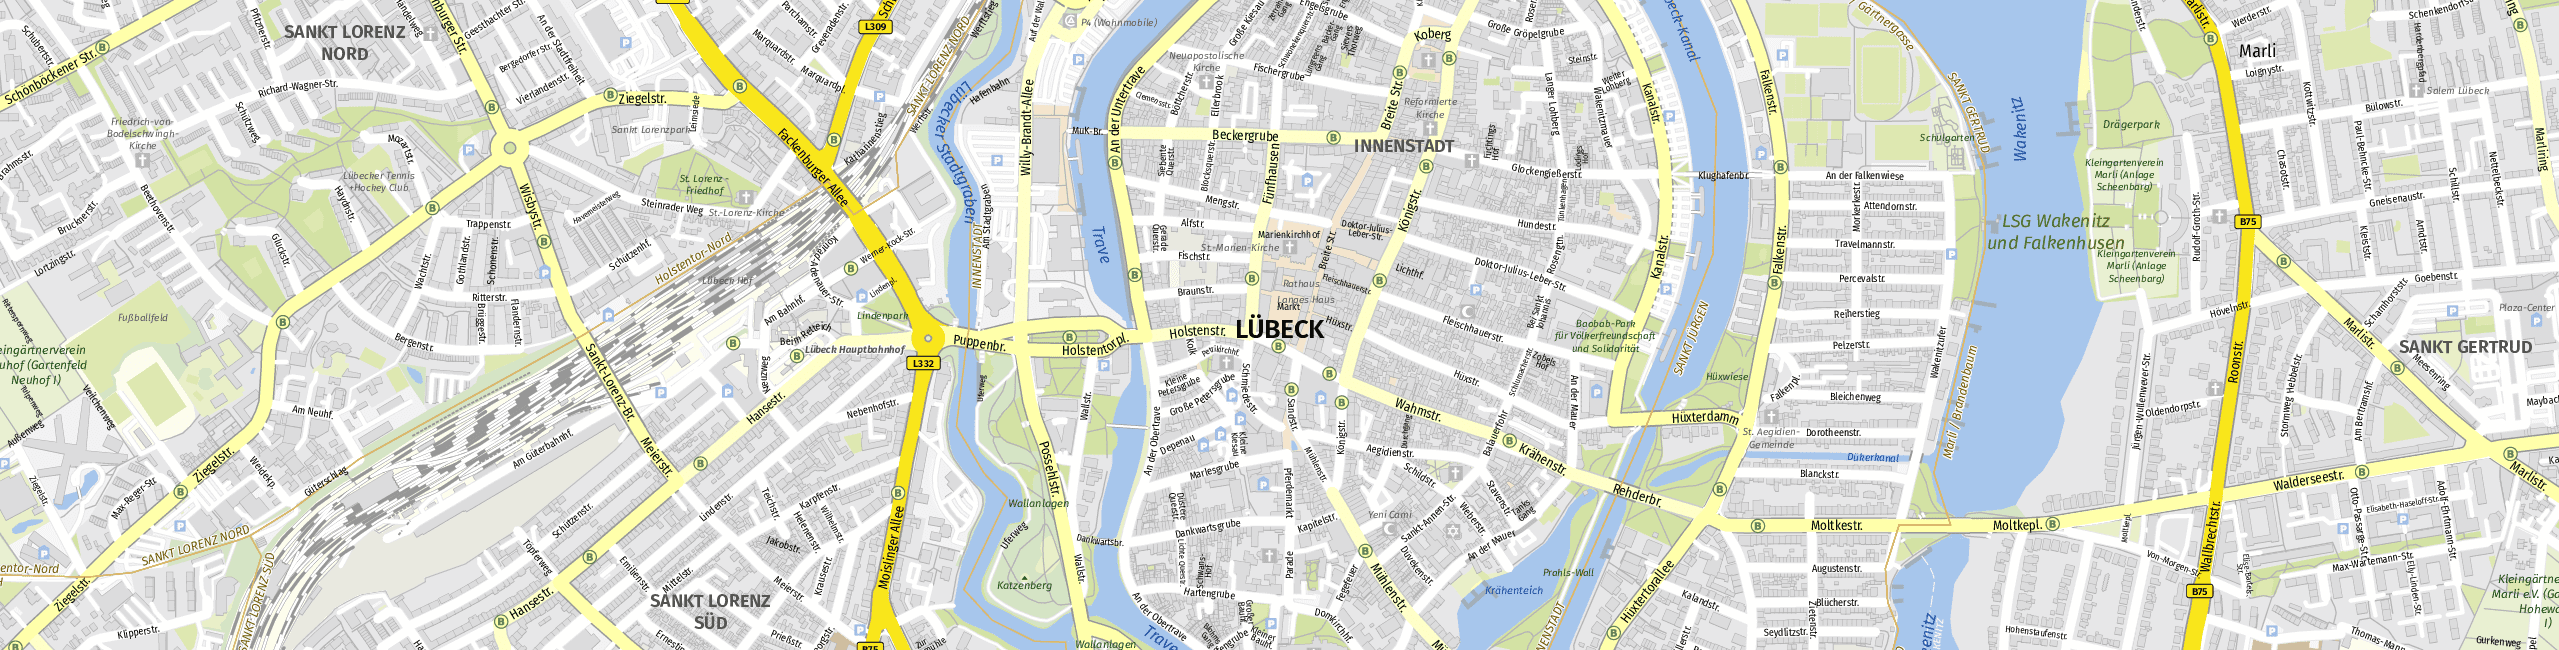 Stadtplan Lübeck zum Downloaden.